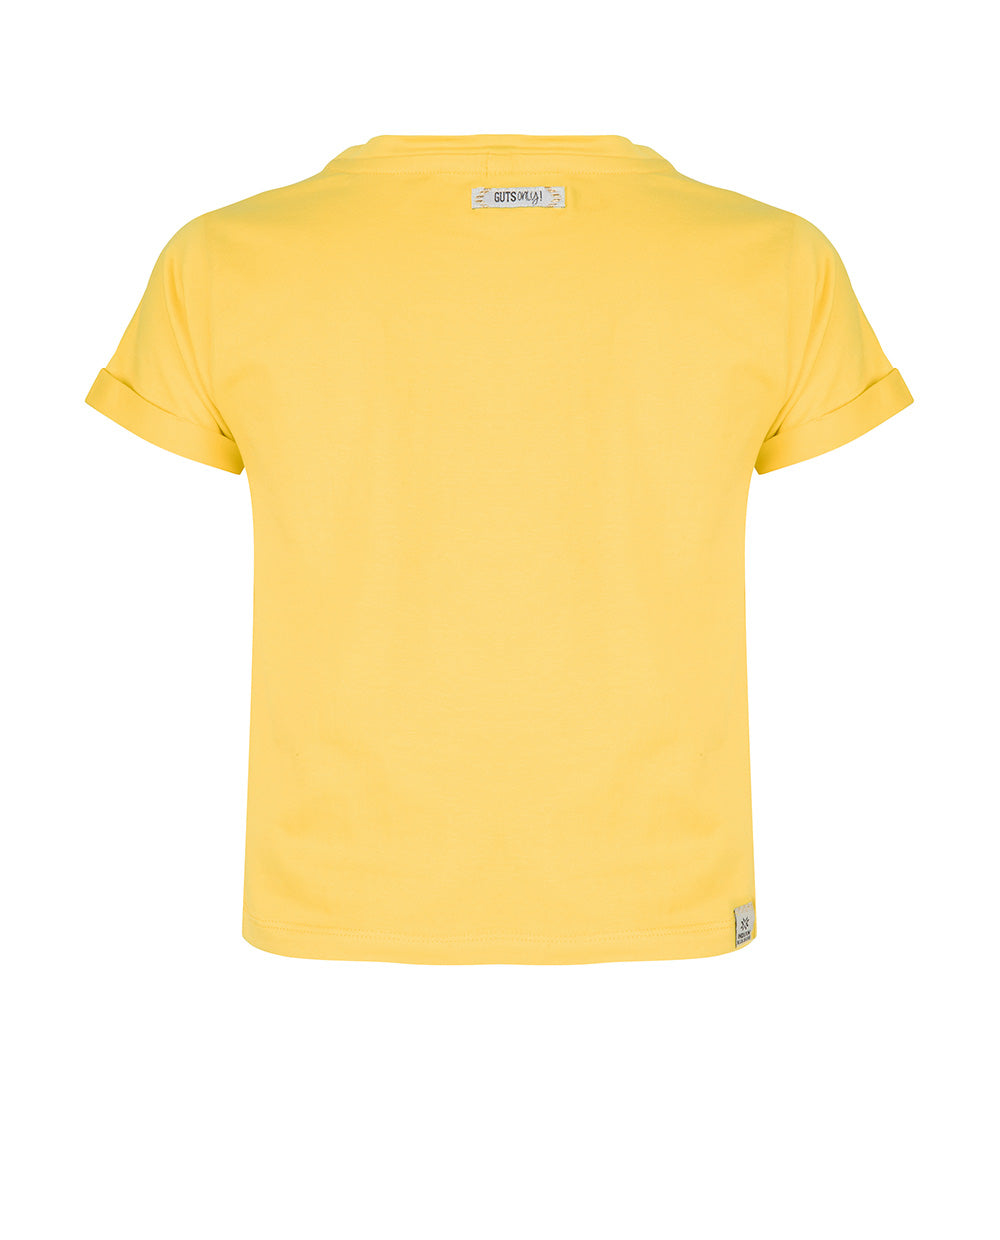 Meisjes T-Shirt Ss Ibj van Indian Blue Jeans in de kleur Sunny Yellow in maat 176.